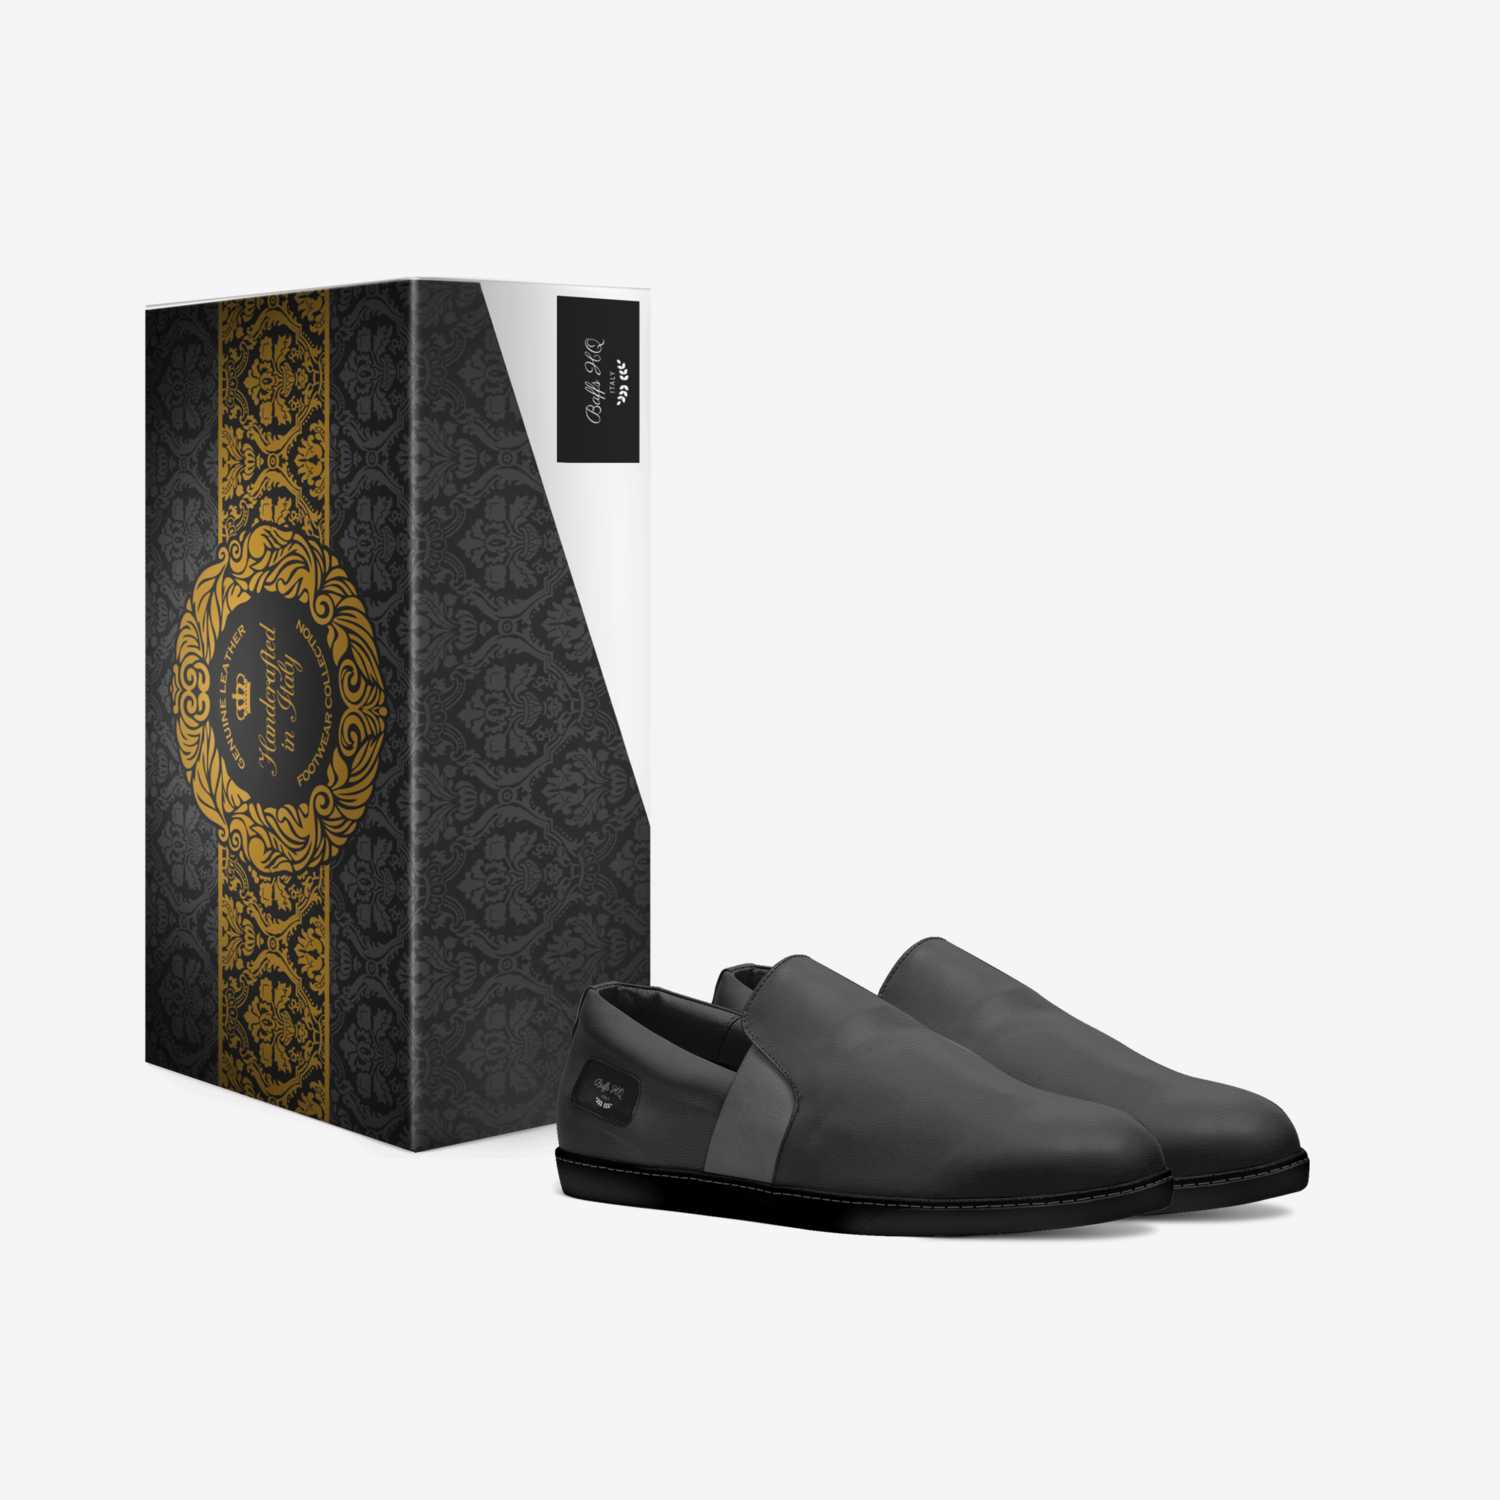 Stigloo custom made in Italy shoes by Luca Onyebueke | Box view